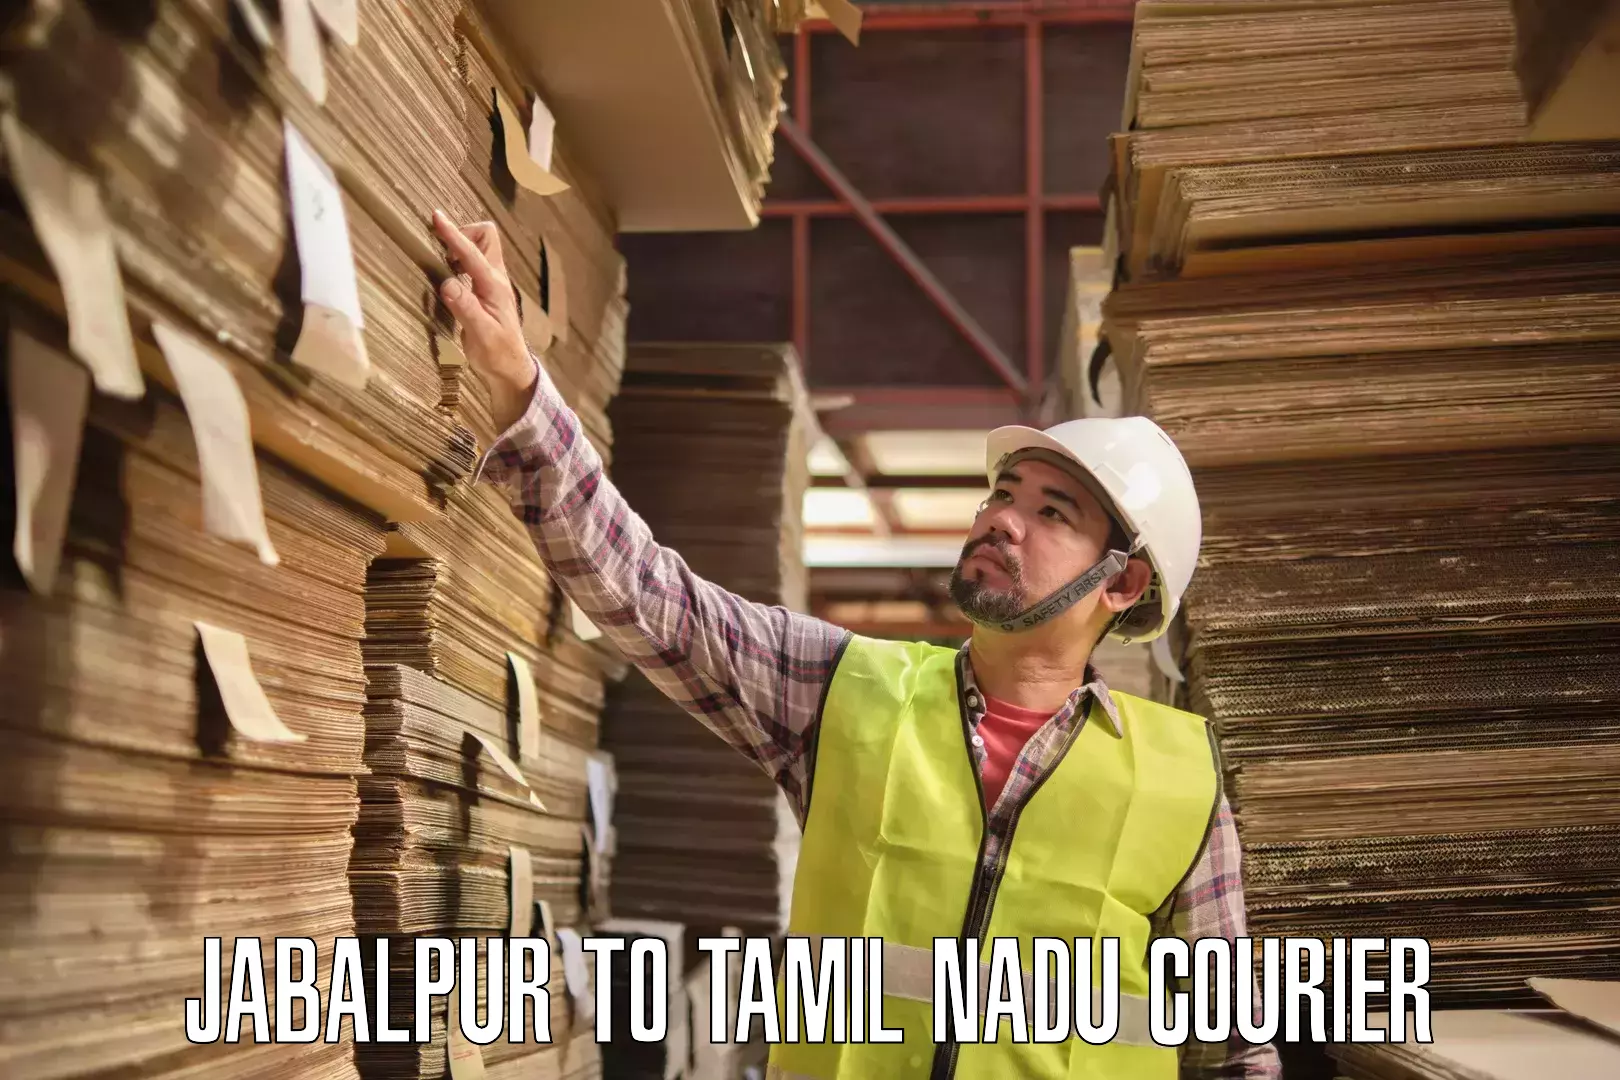 Bulk shipping discounts Jabalpur to Tamil Nadu